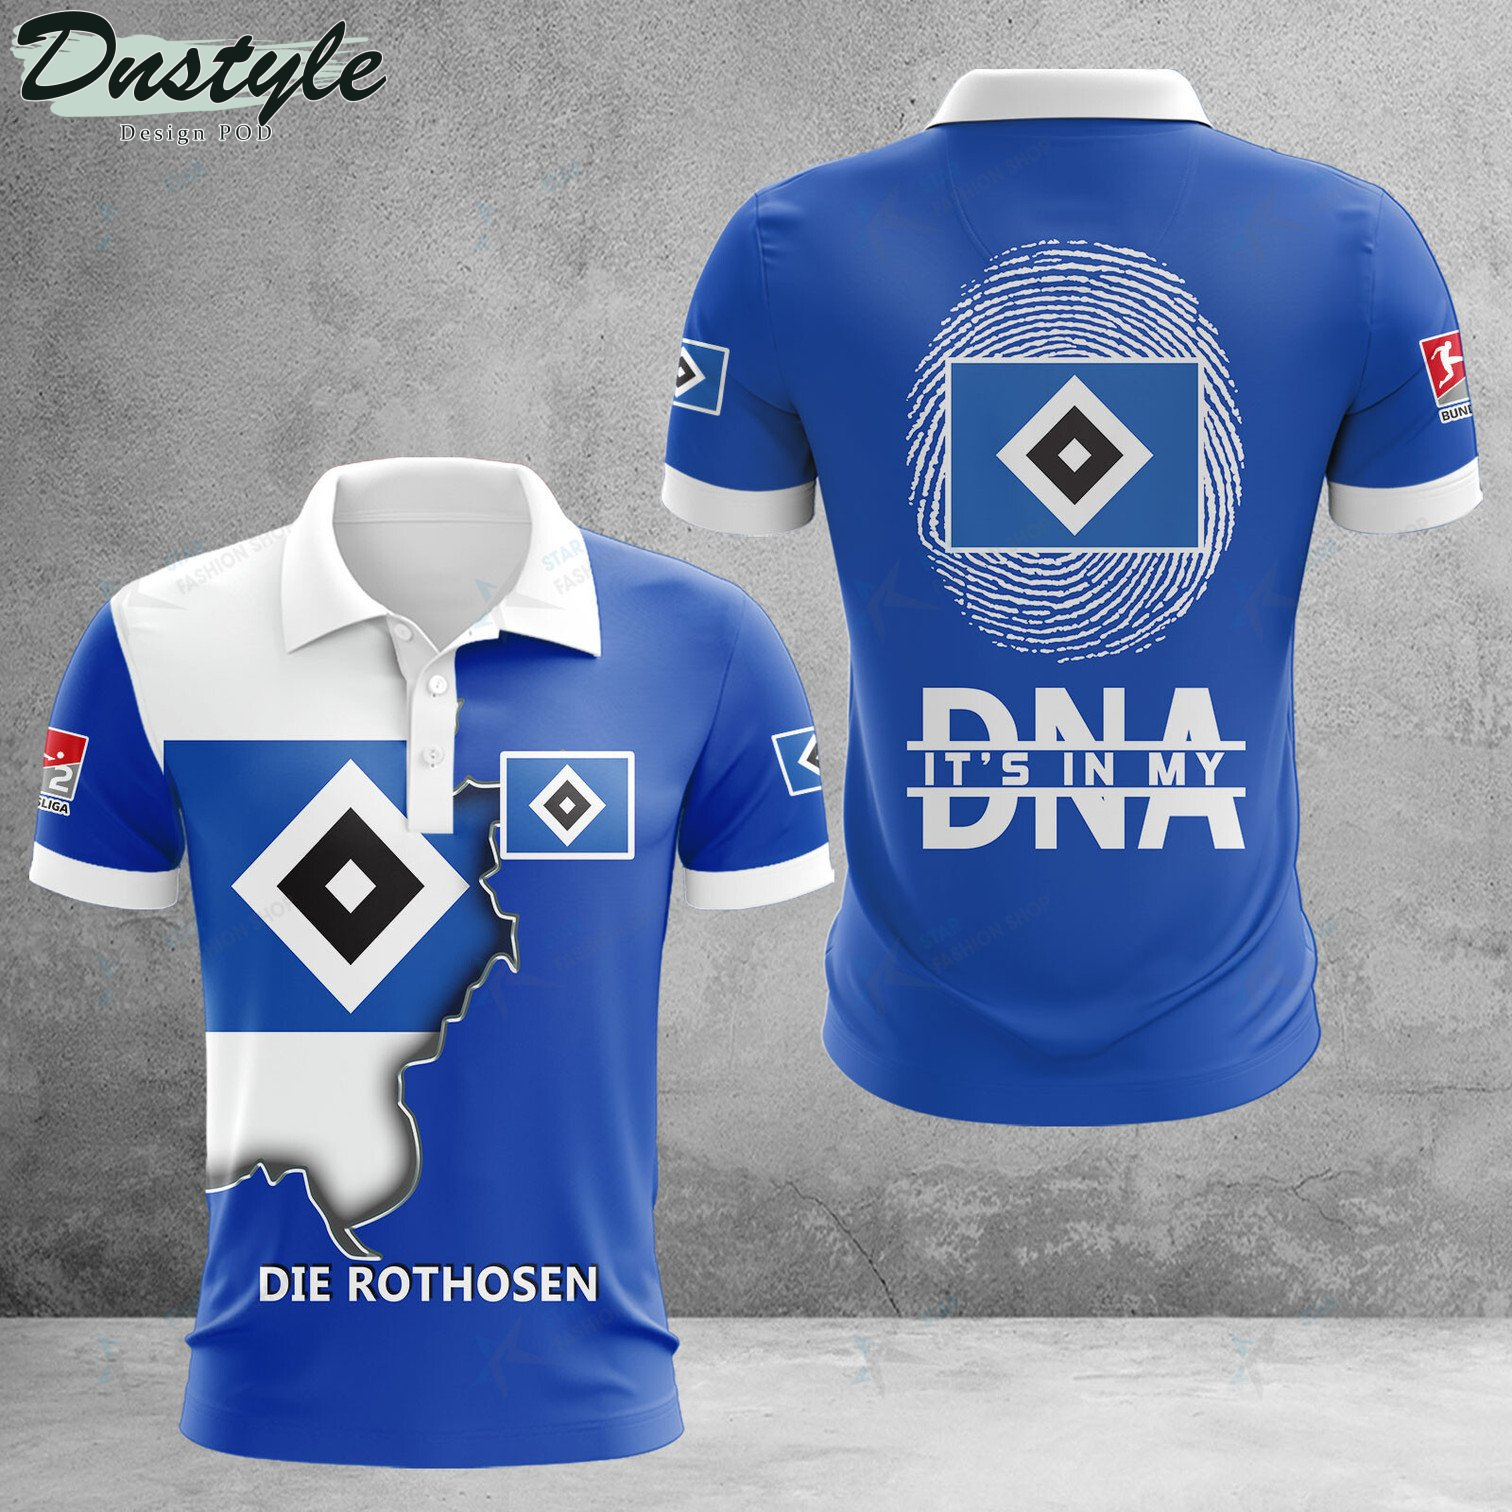 Hamburger SV it's in my DNA polo shirt